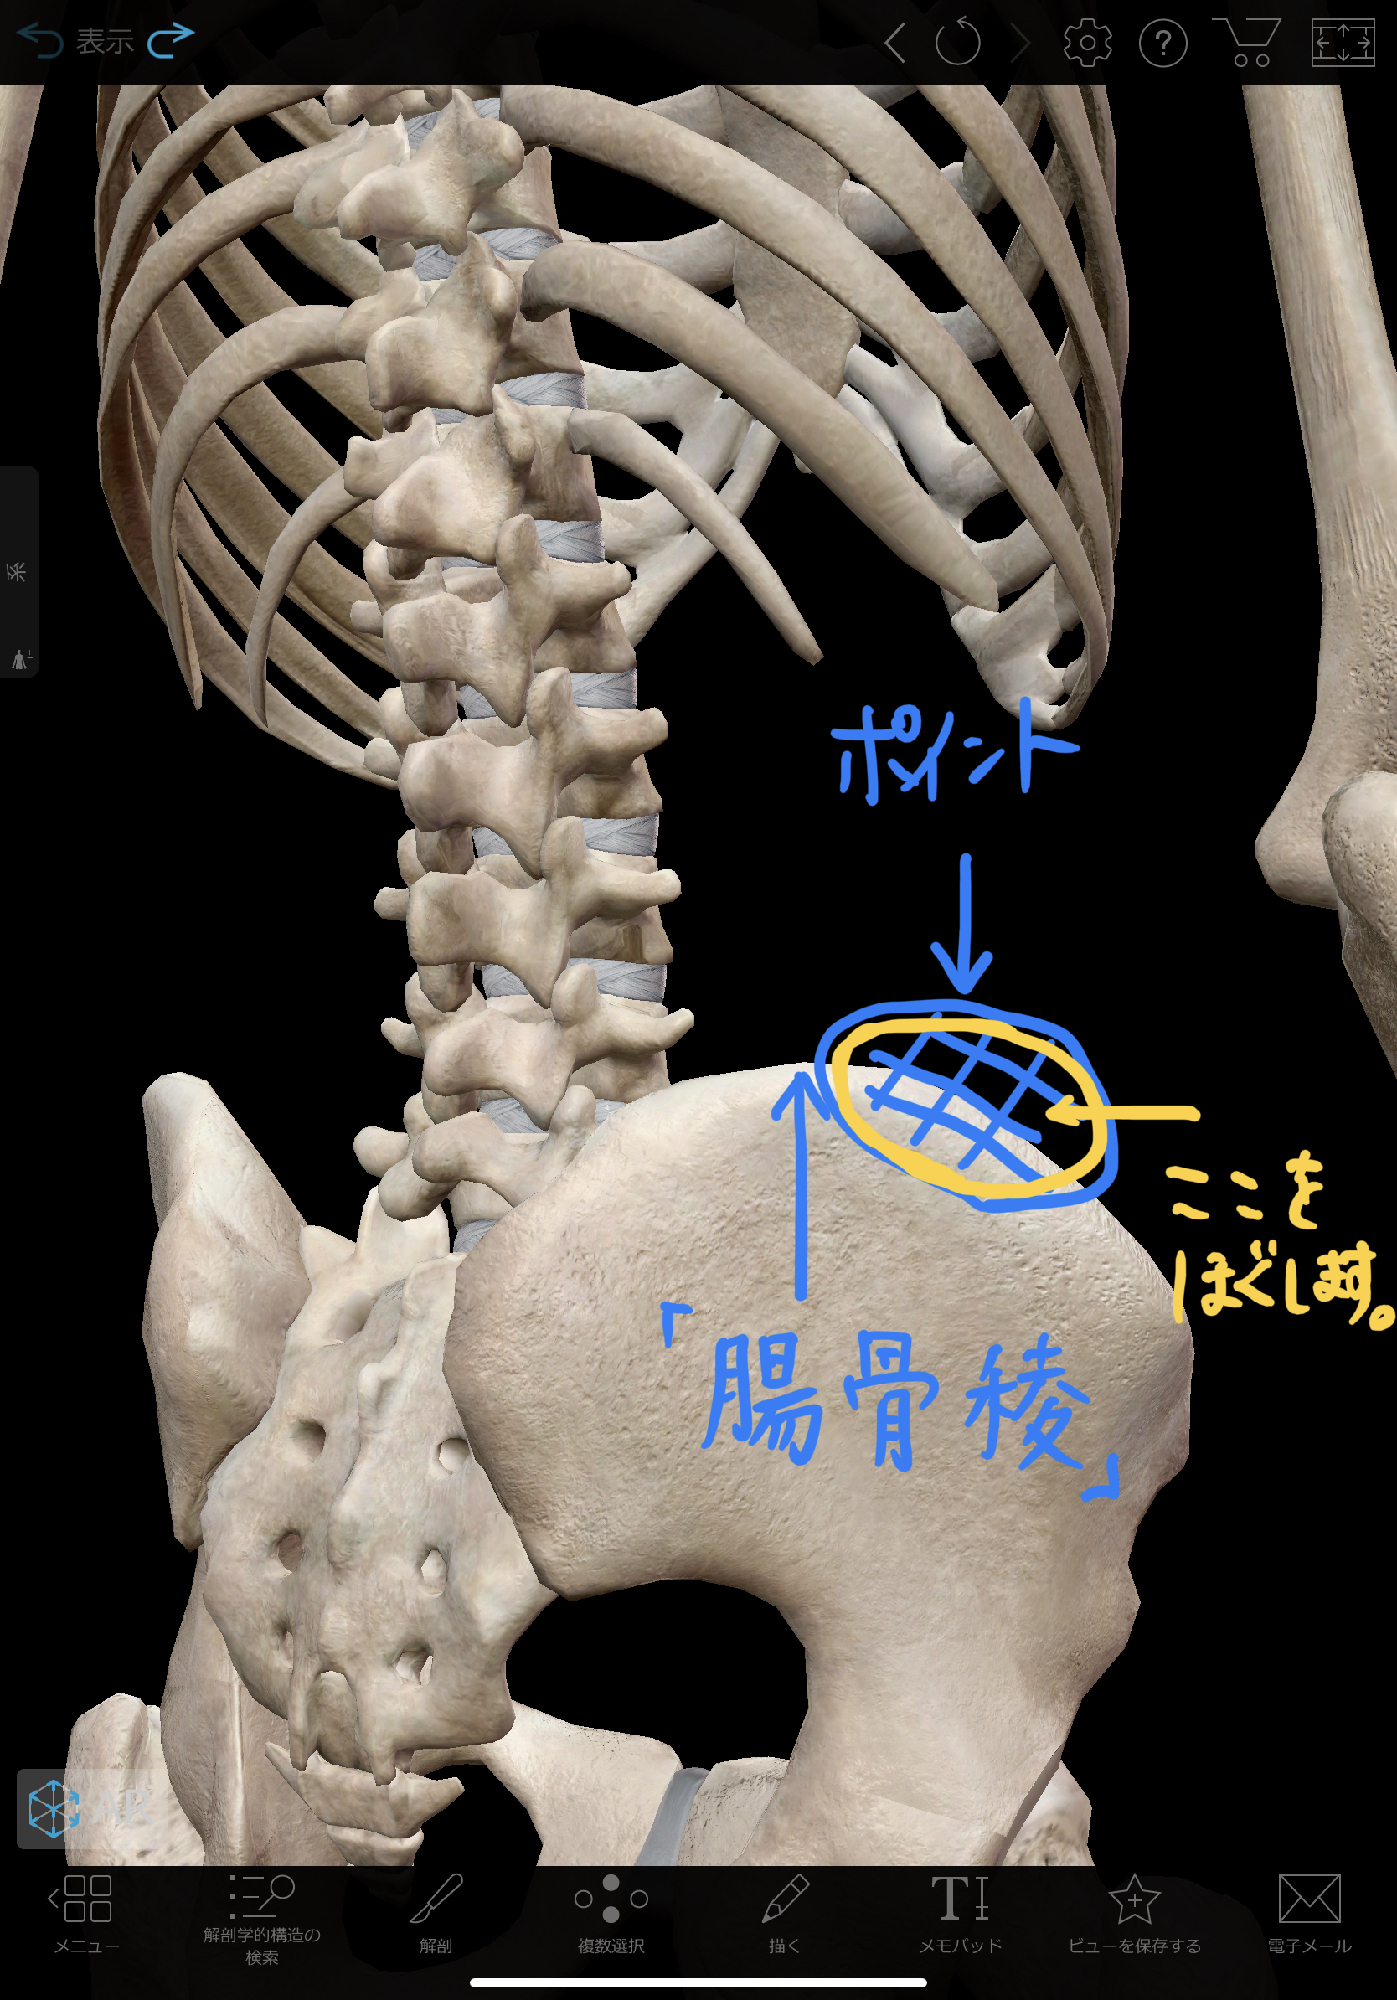 腰痛を改善する超かんたん 骨盤リリース 理学療法士 安部元隆 マイベストプロ大分